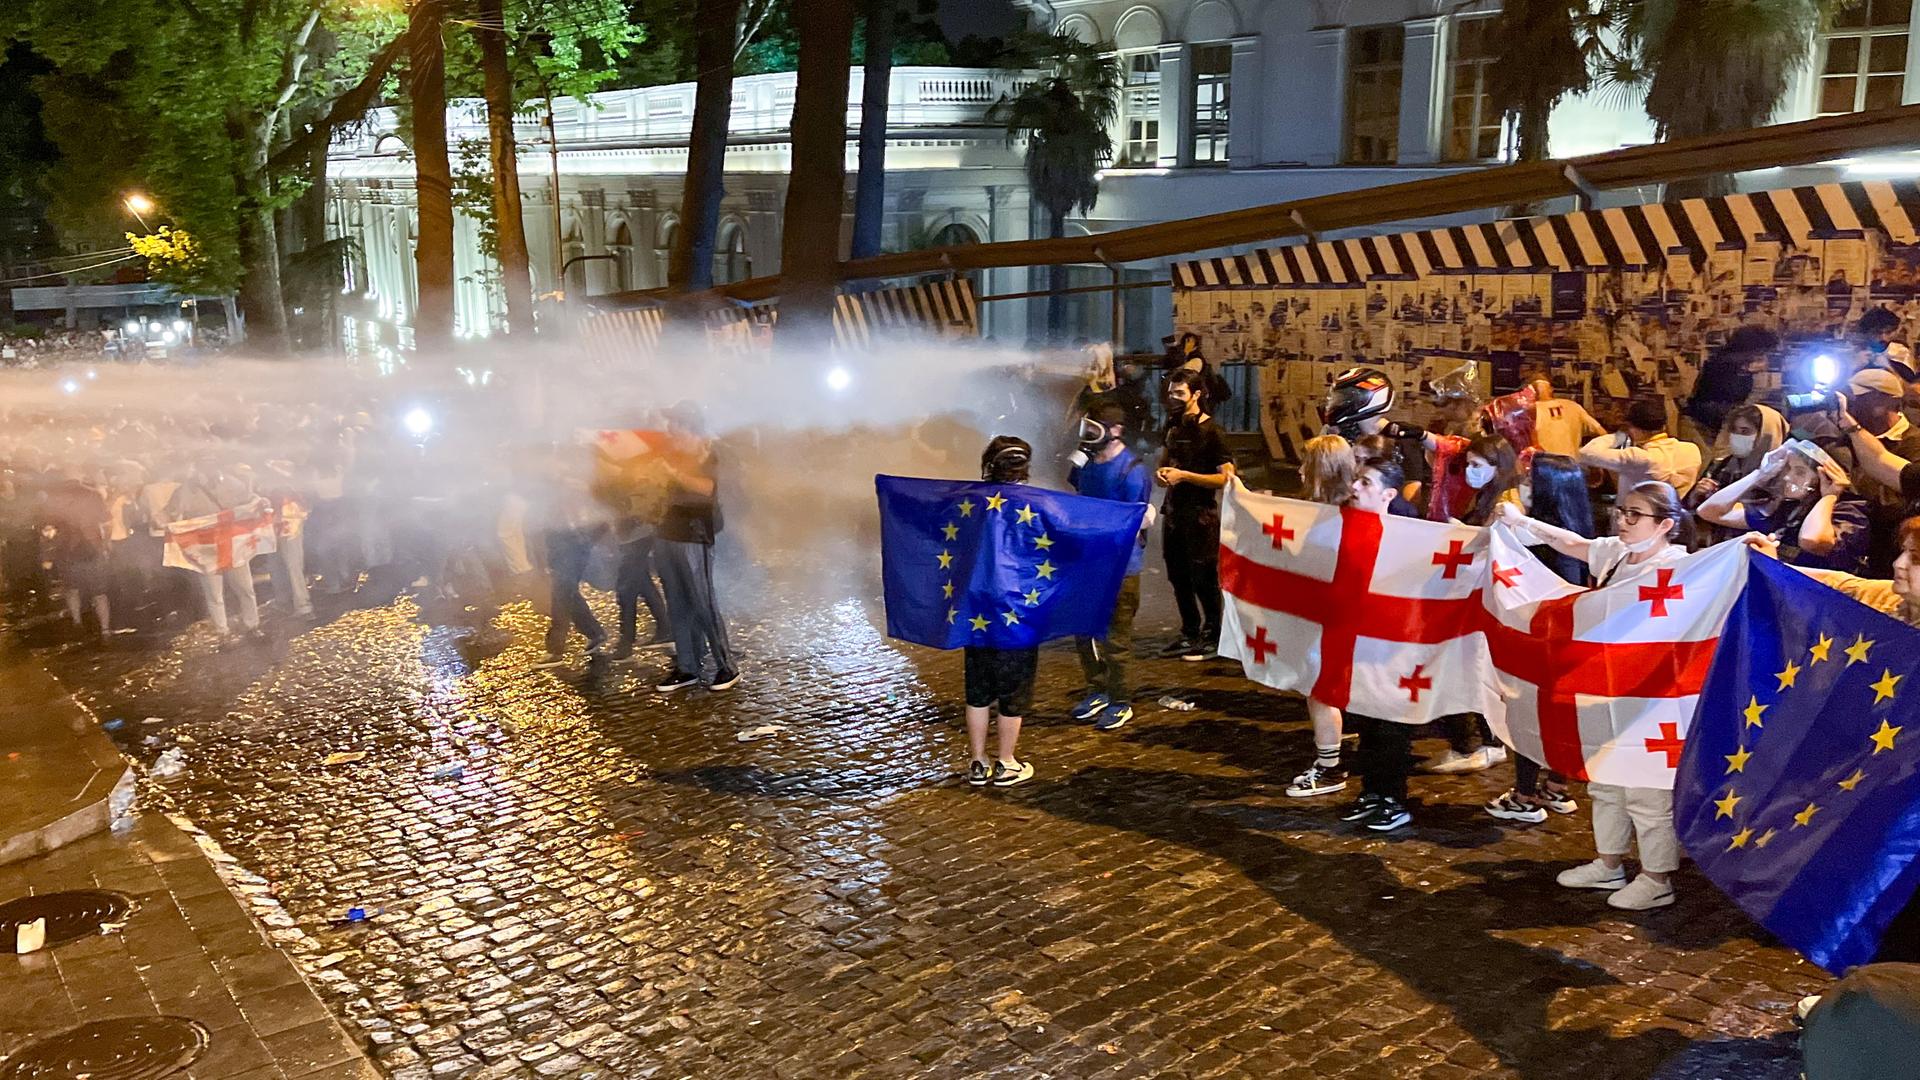 Demonstrierende in Tiflis halten georgische und EU-Flaggen hoch, während sie von der Polizei mit Wasser beschossen werden.